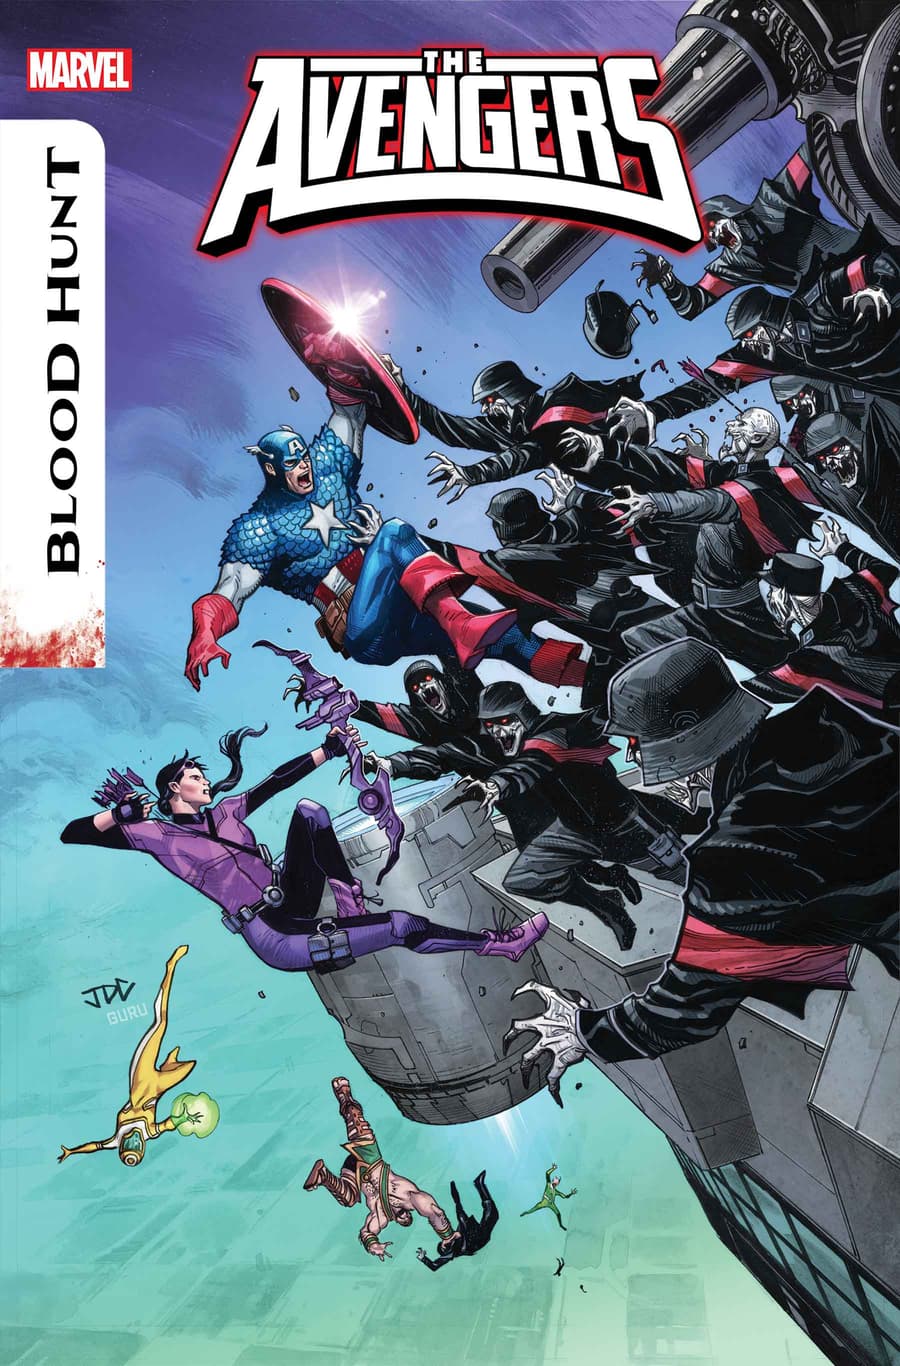 The Avengers #15 cover art